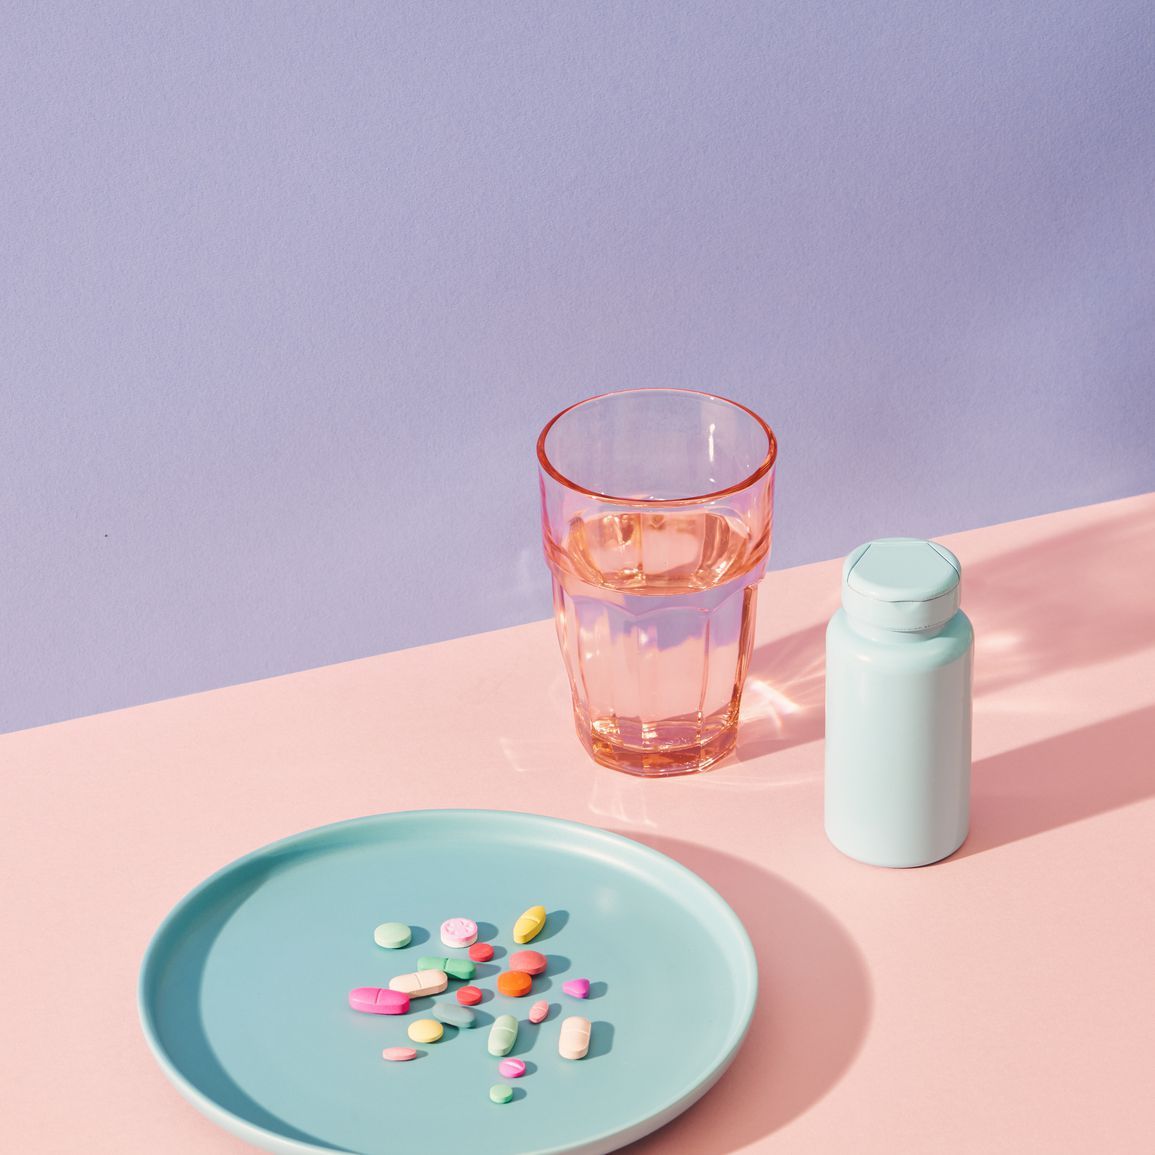 Vitaminpräparate auf dem Tisch mit Glas und Tablettenfläschchen